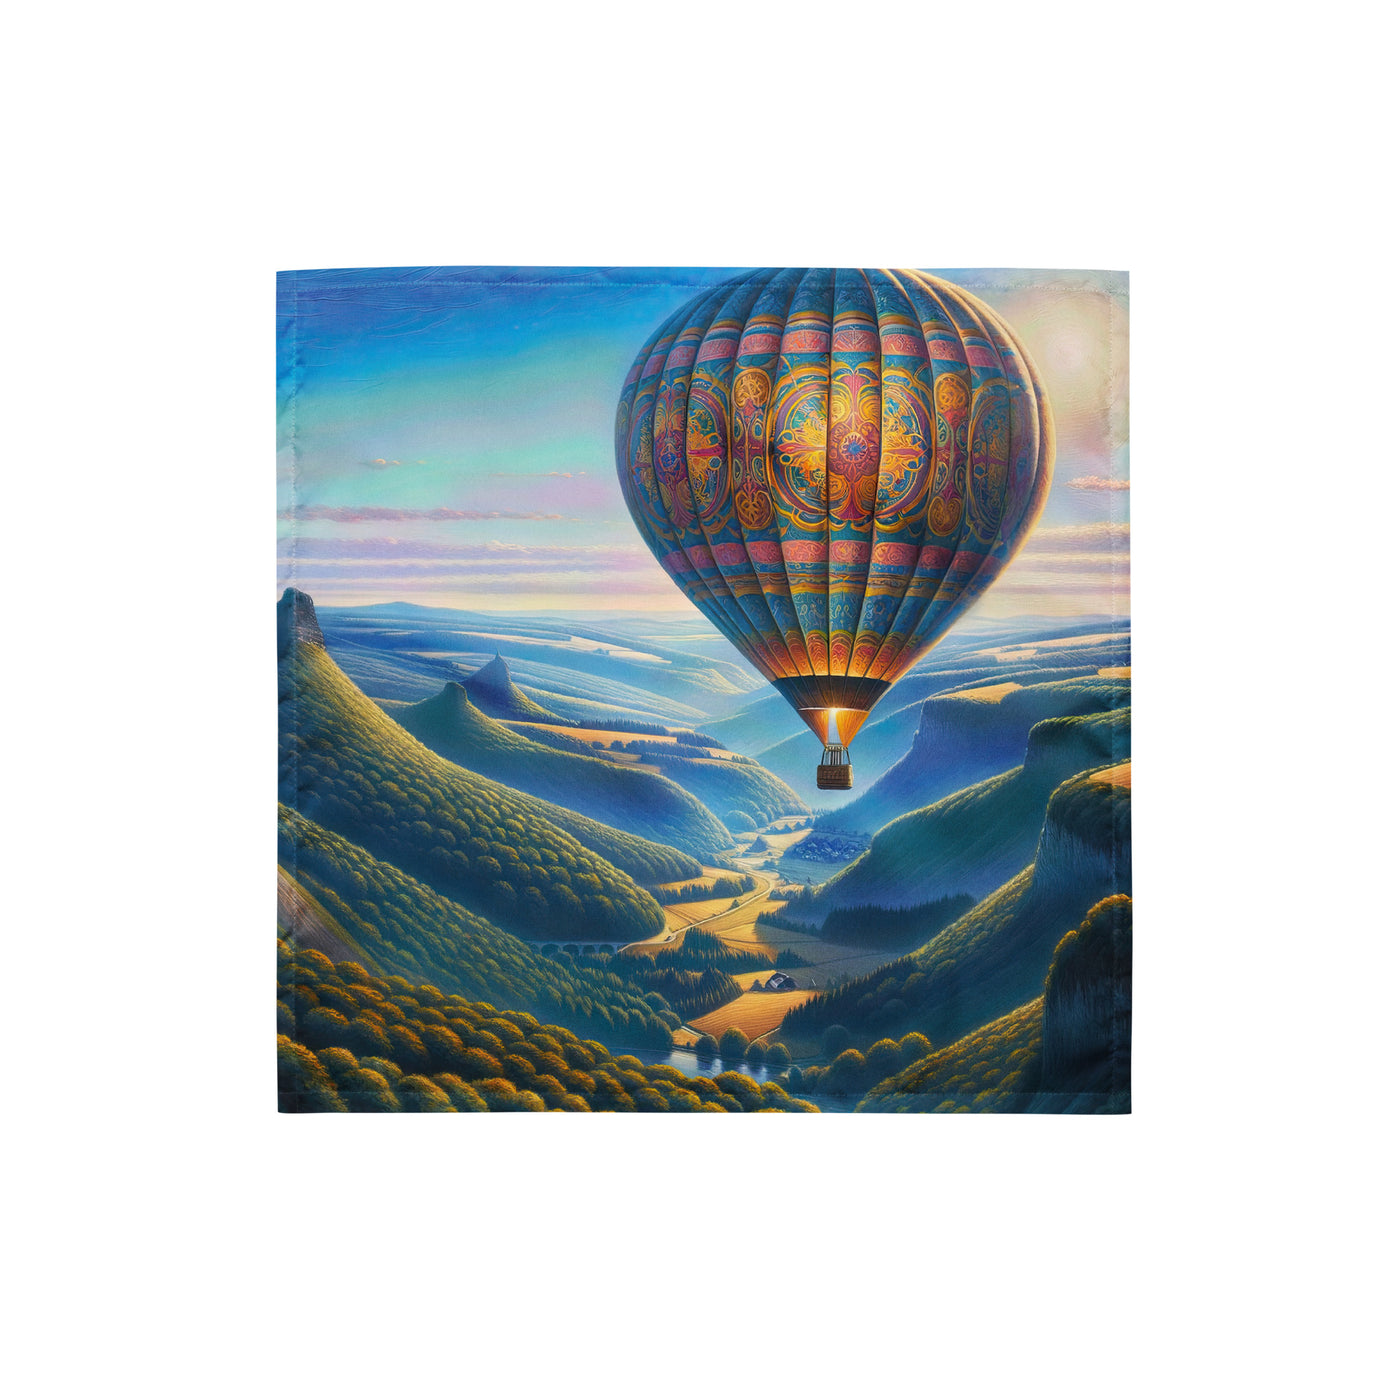 Ölgemälde einer ruhigen Szene mit verziertem Heißluftballon - Bandana (All-Over Print) berge xxx yyy zzz S